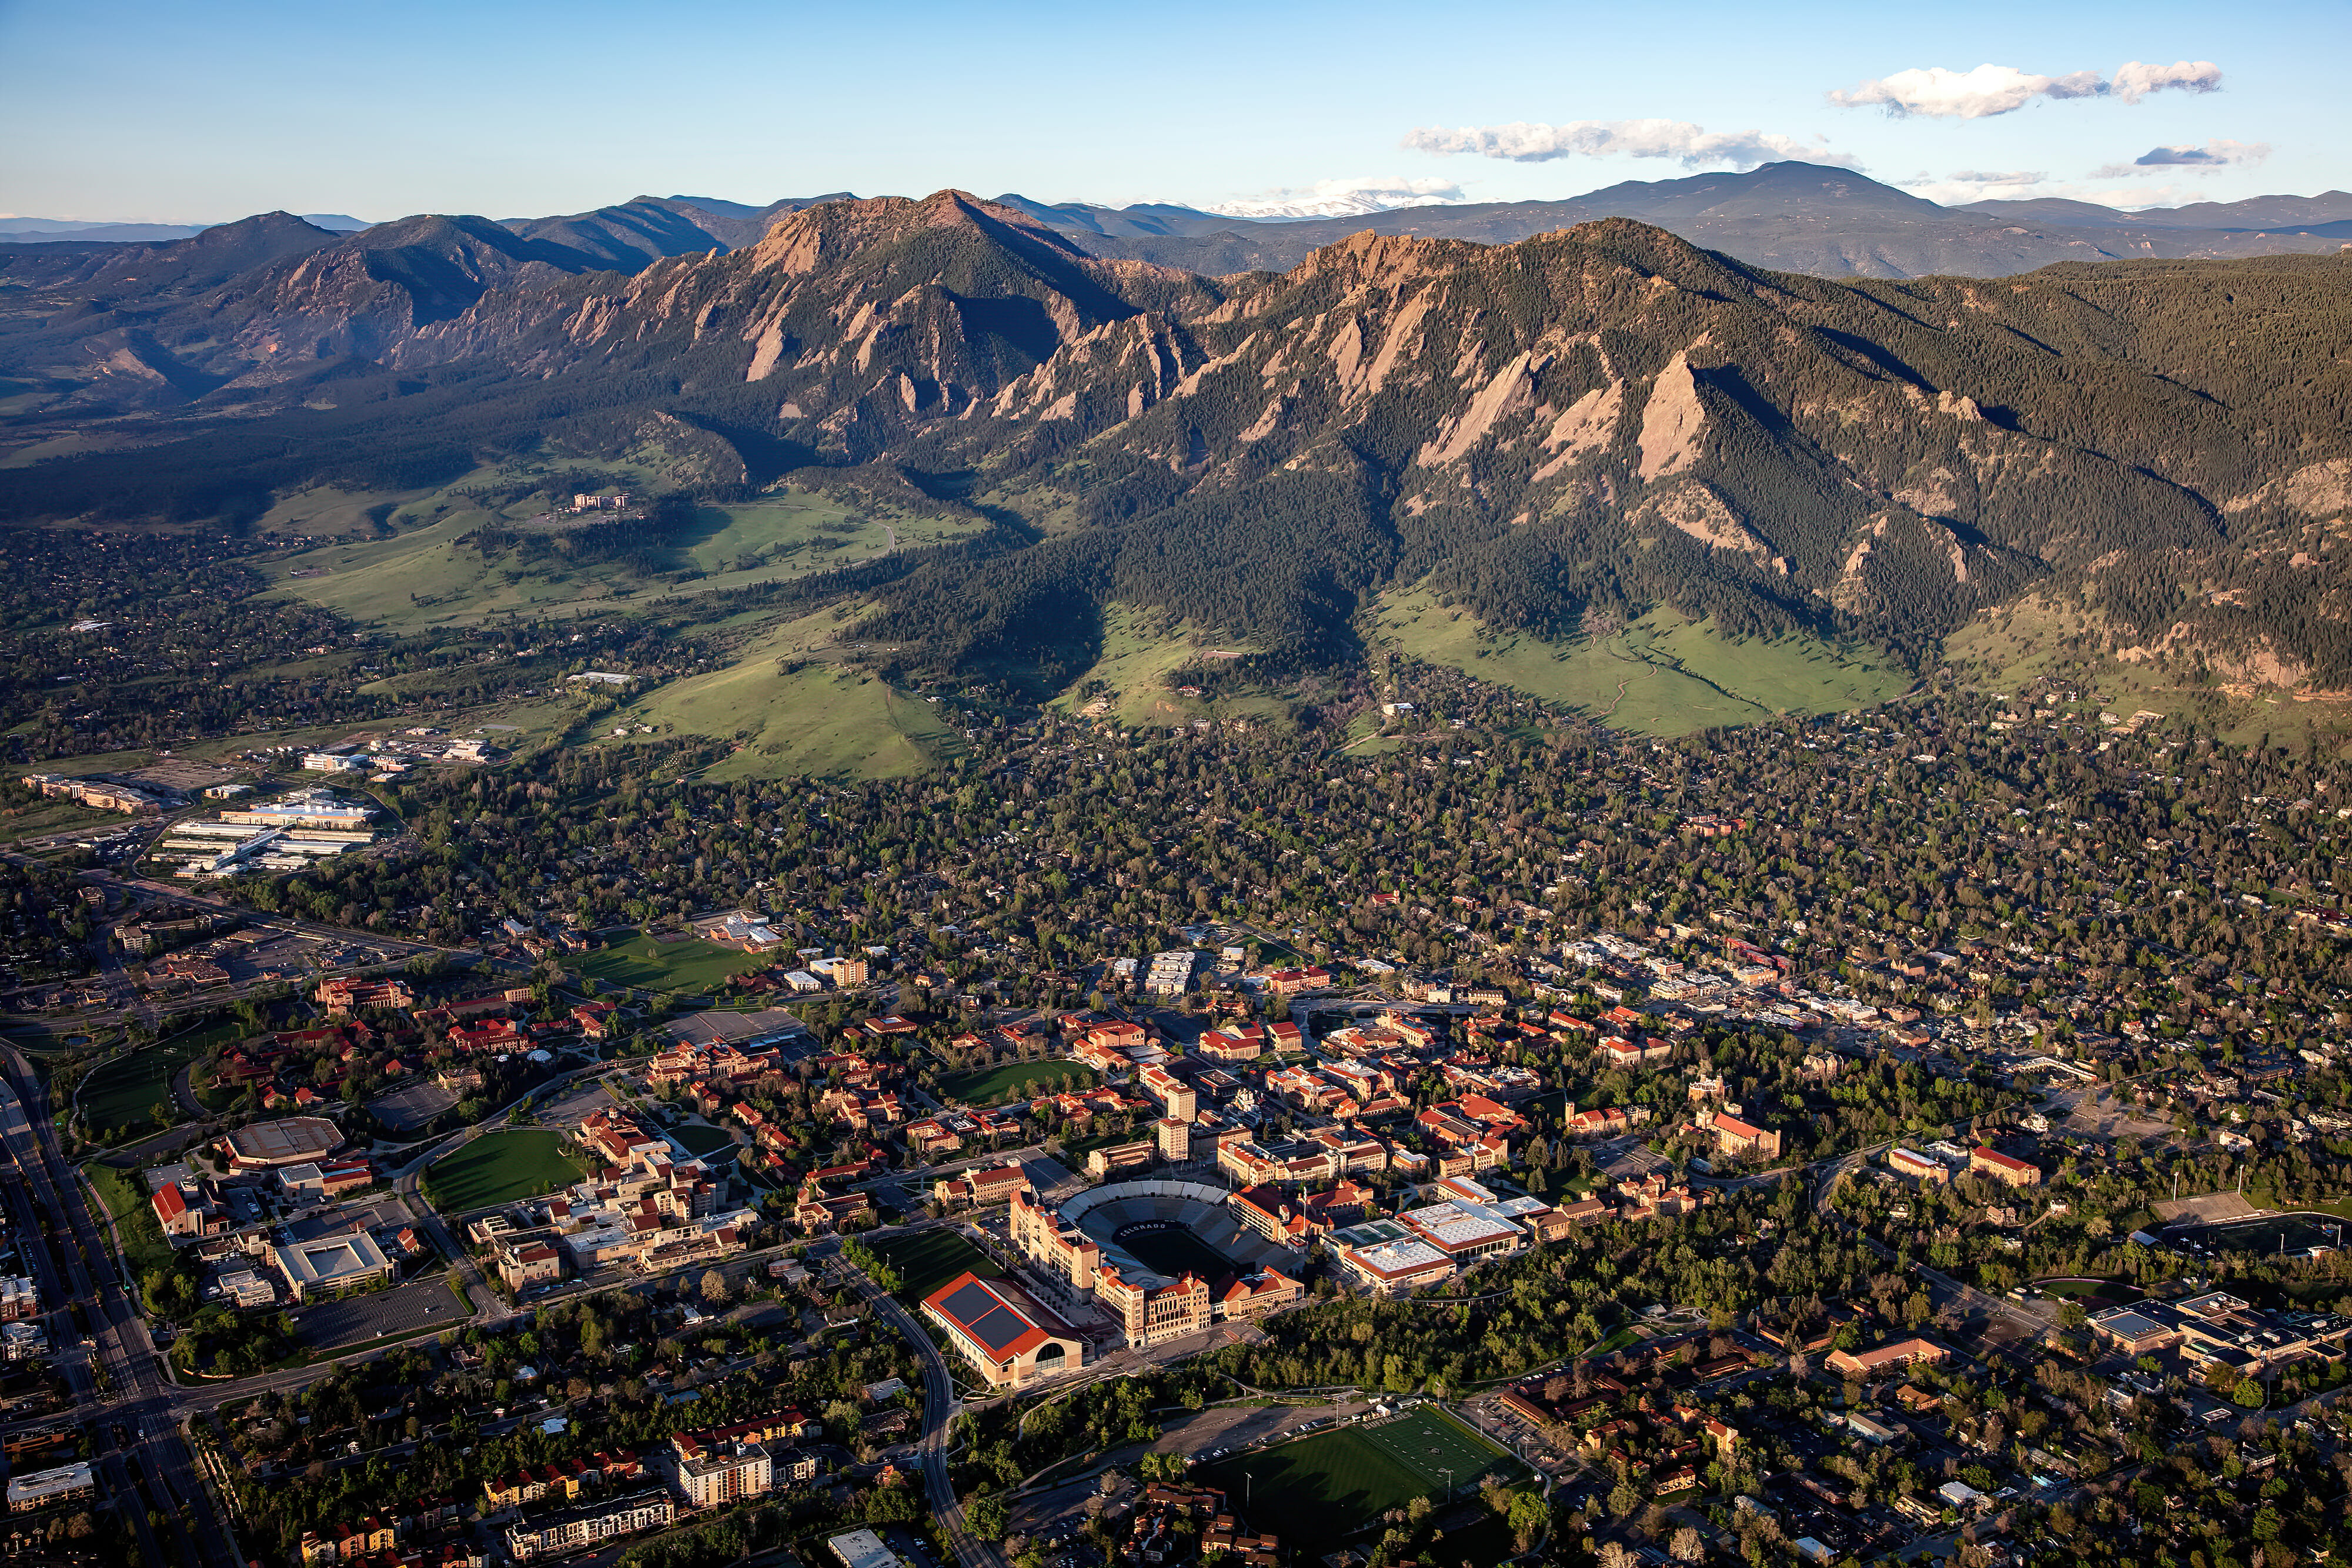 Boulder Colorado, University of Colorado aerial image